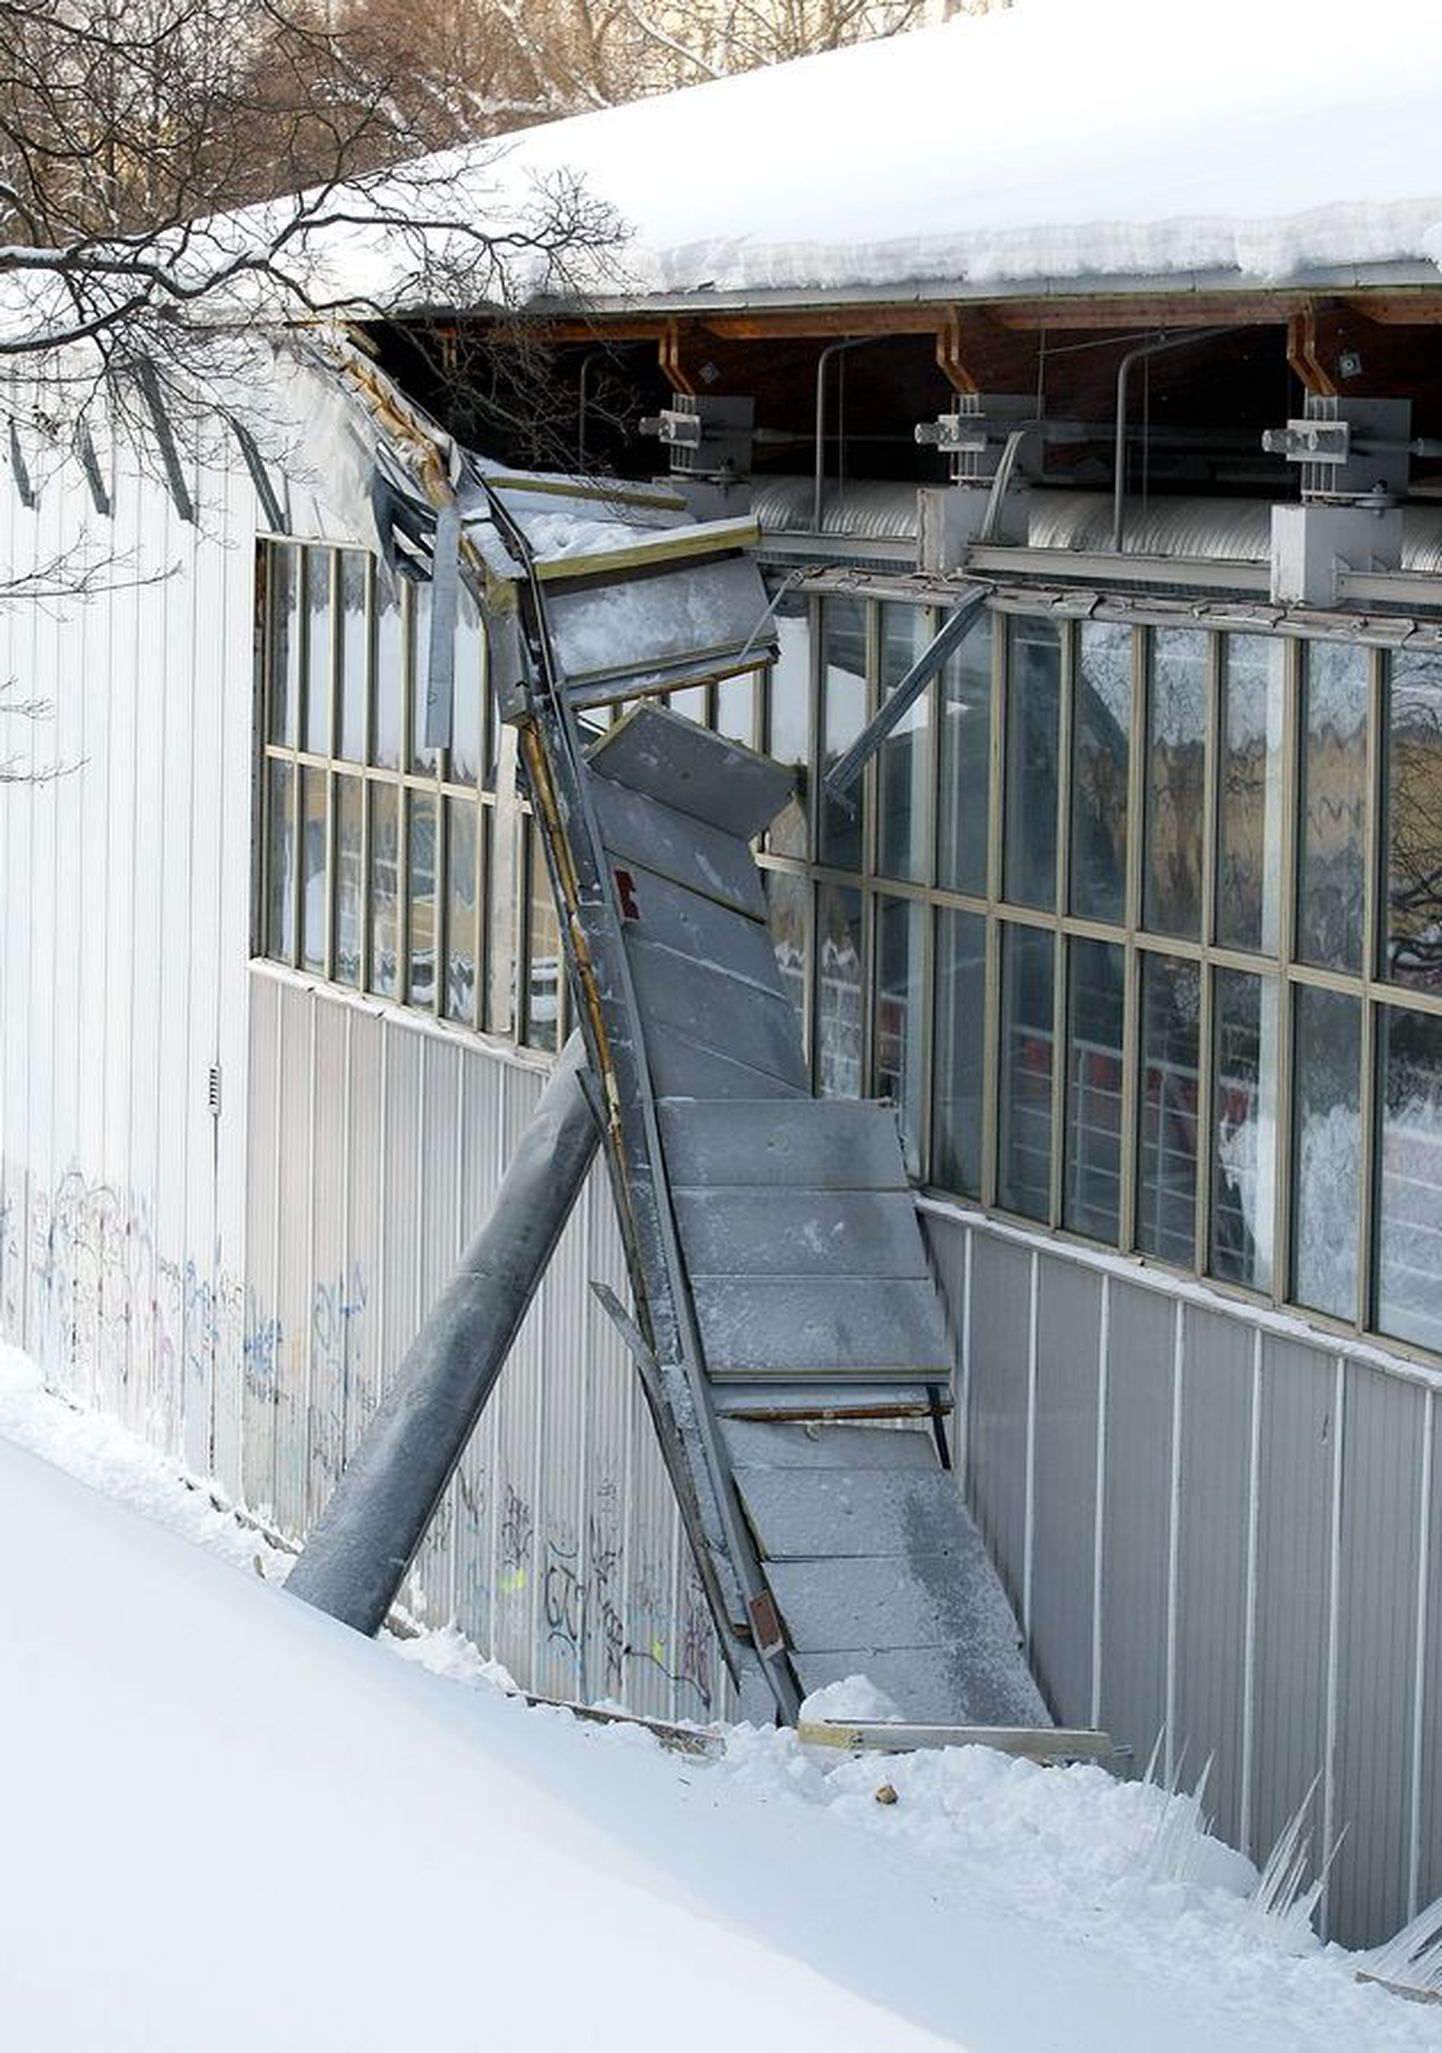 Esmaspäeval rebis katuseräästasse kogunenud lume ja jääpurikate raskus Tallinna spordihalli seinast suure tüki lahti.